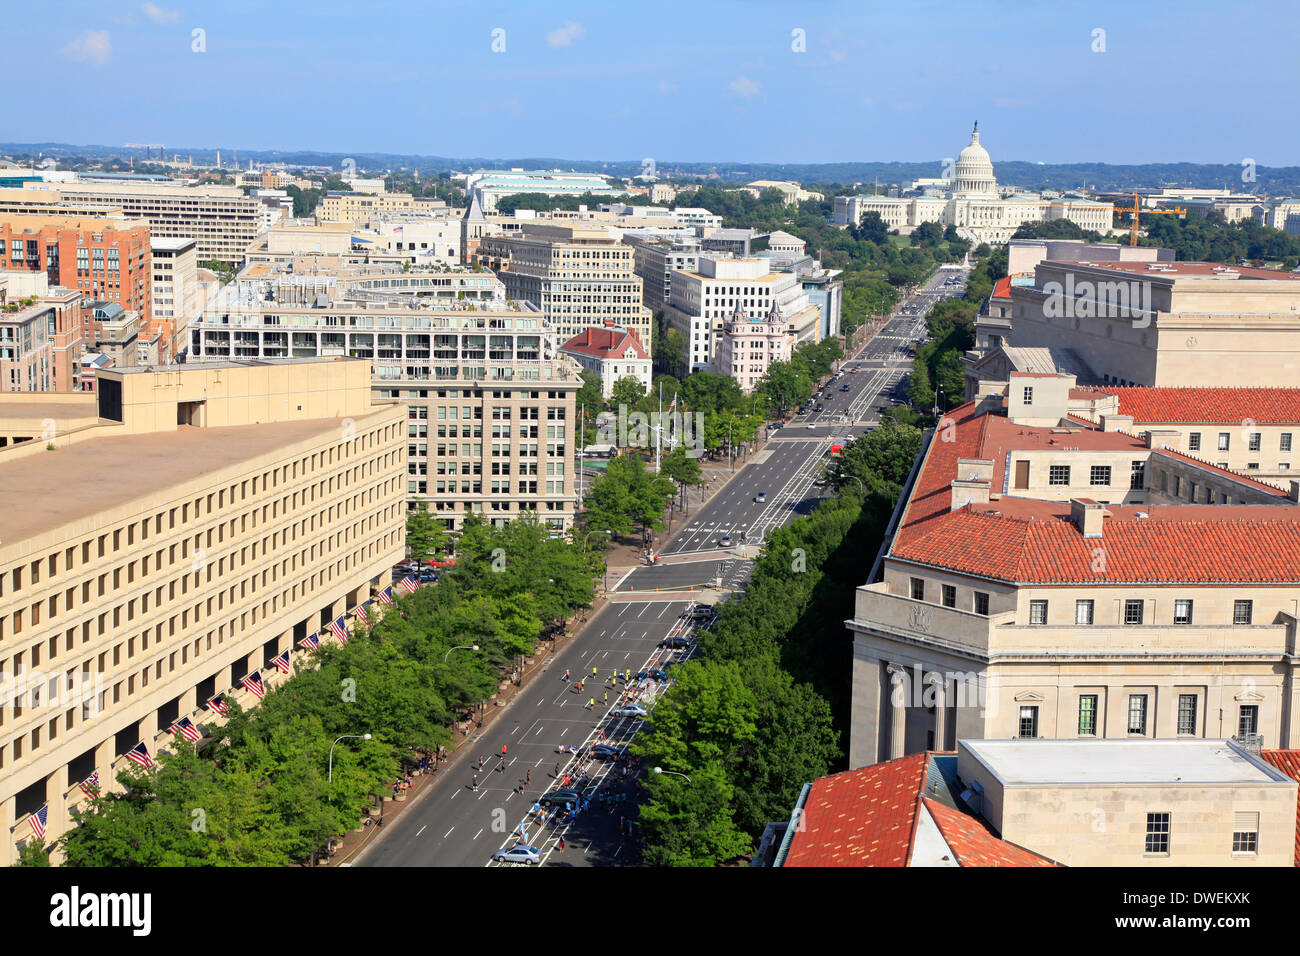 Washington DC, Pennsylvania Avenue, aerial view Stock Photo